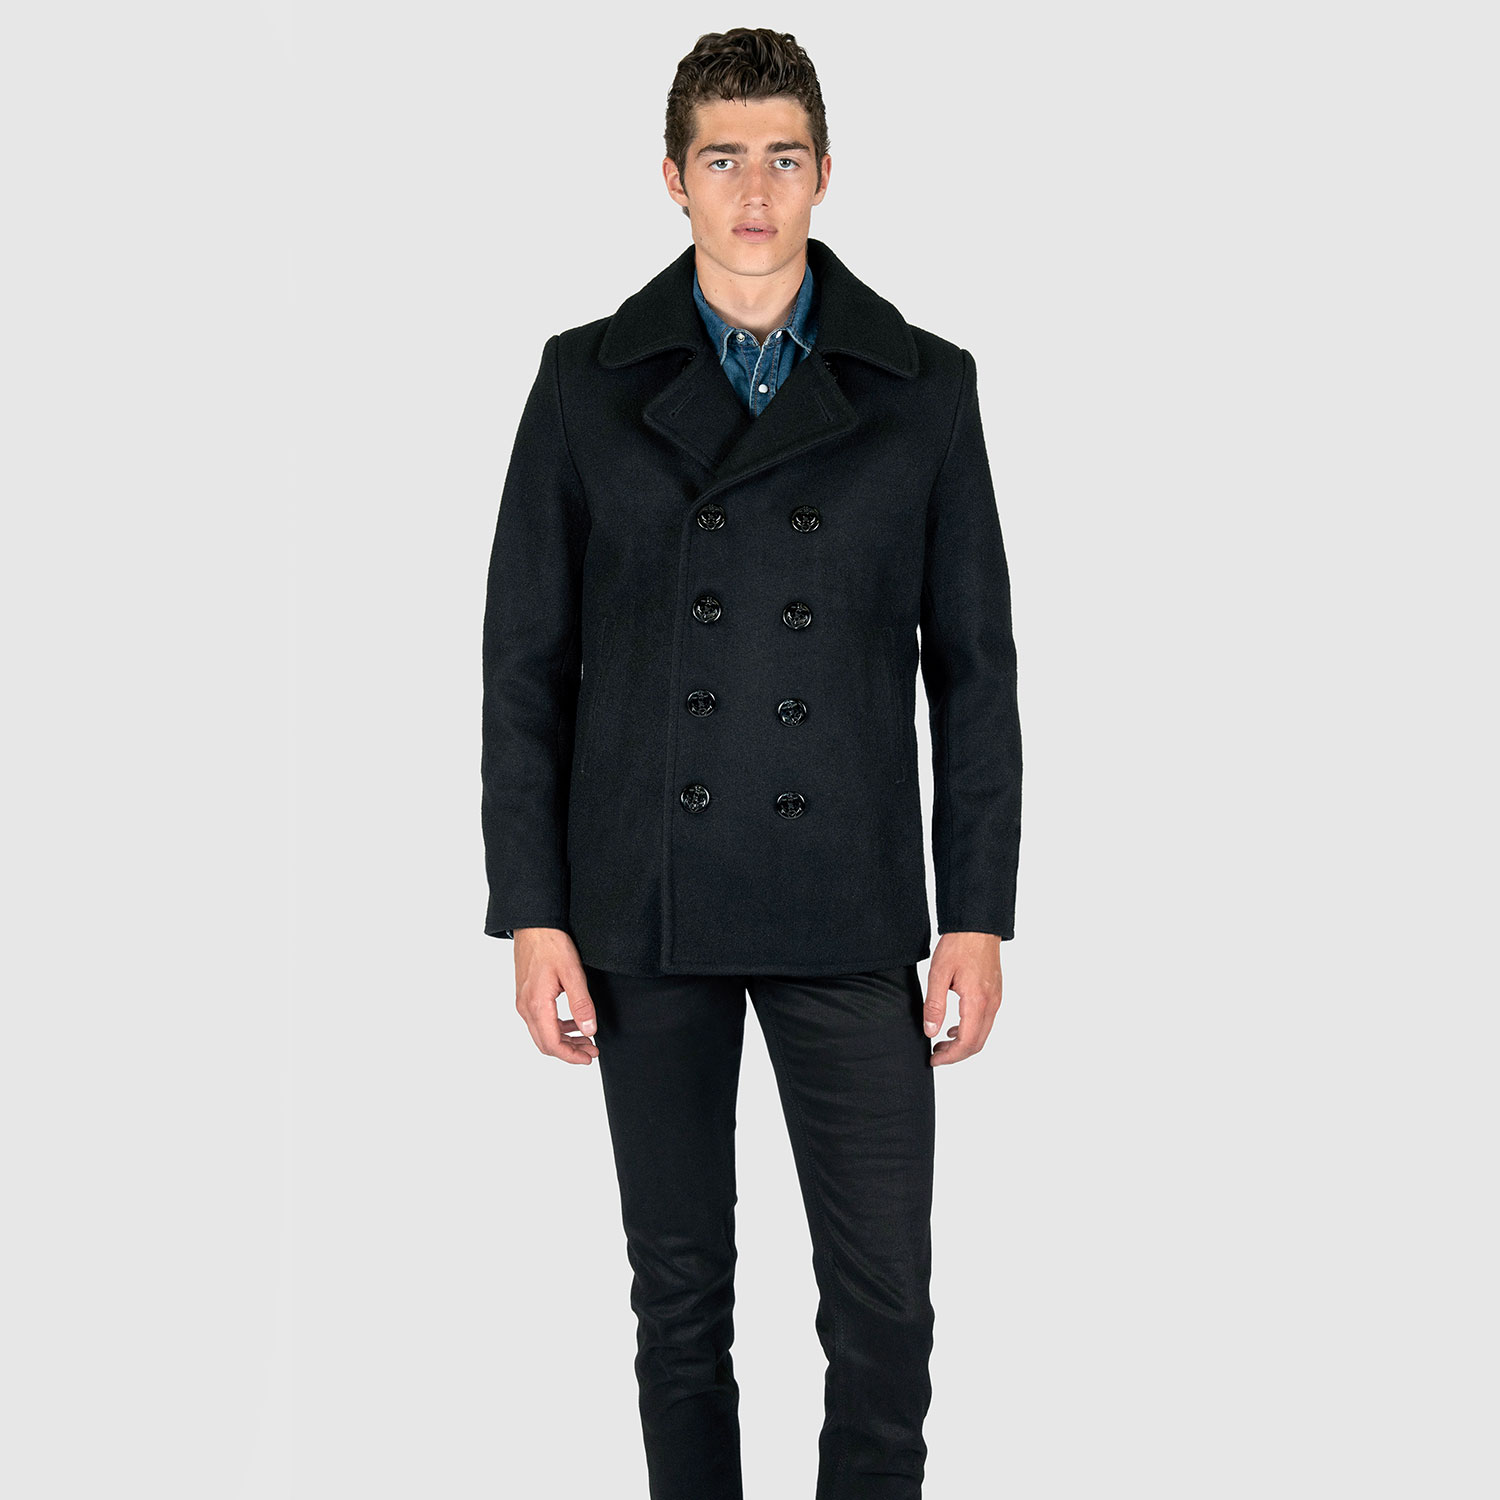 Guardian - Wool Pea Coat (Size XS, S, M, L, XL, 2XL)